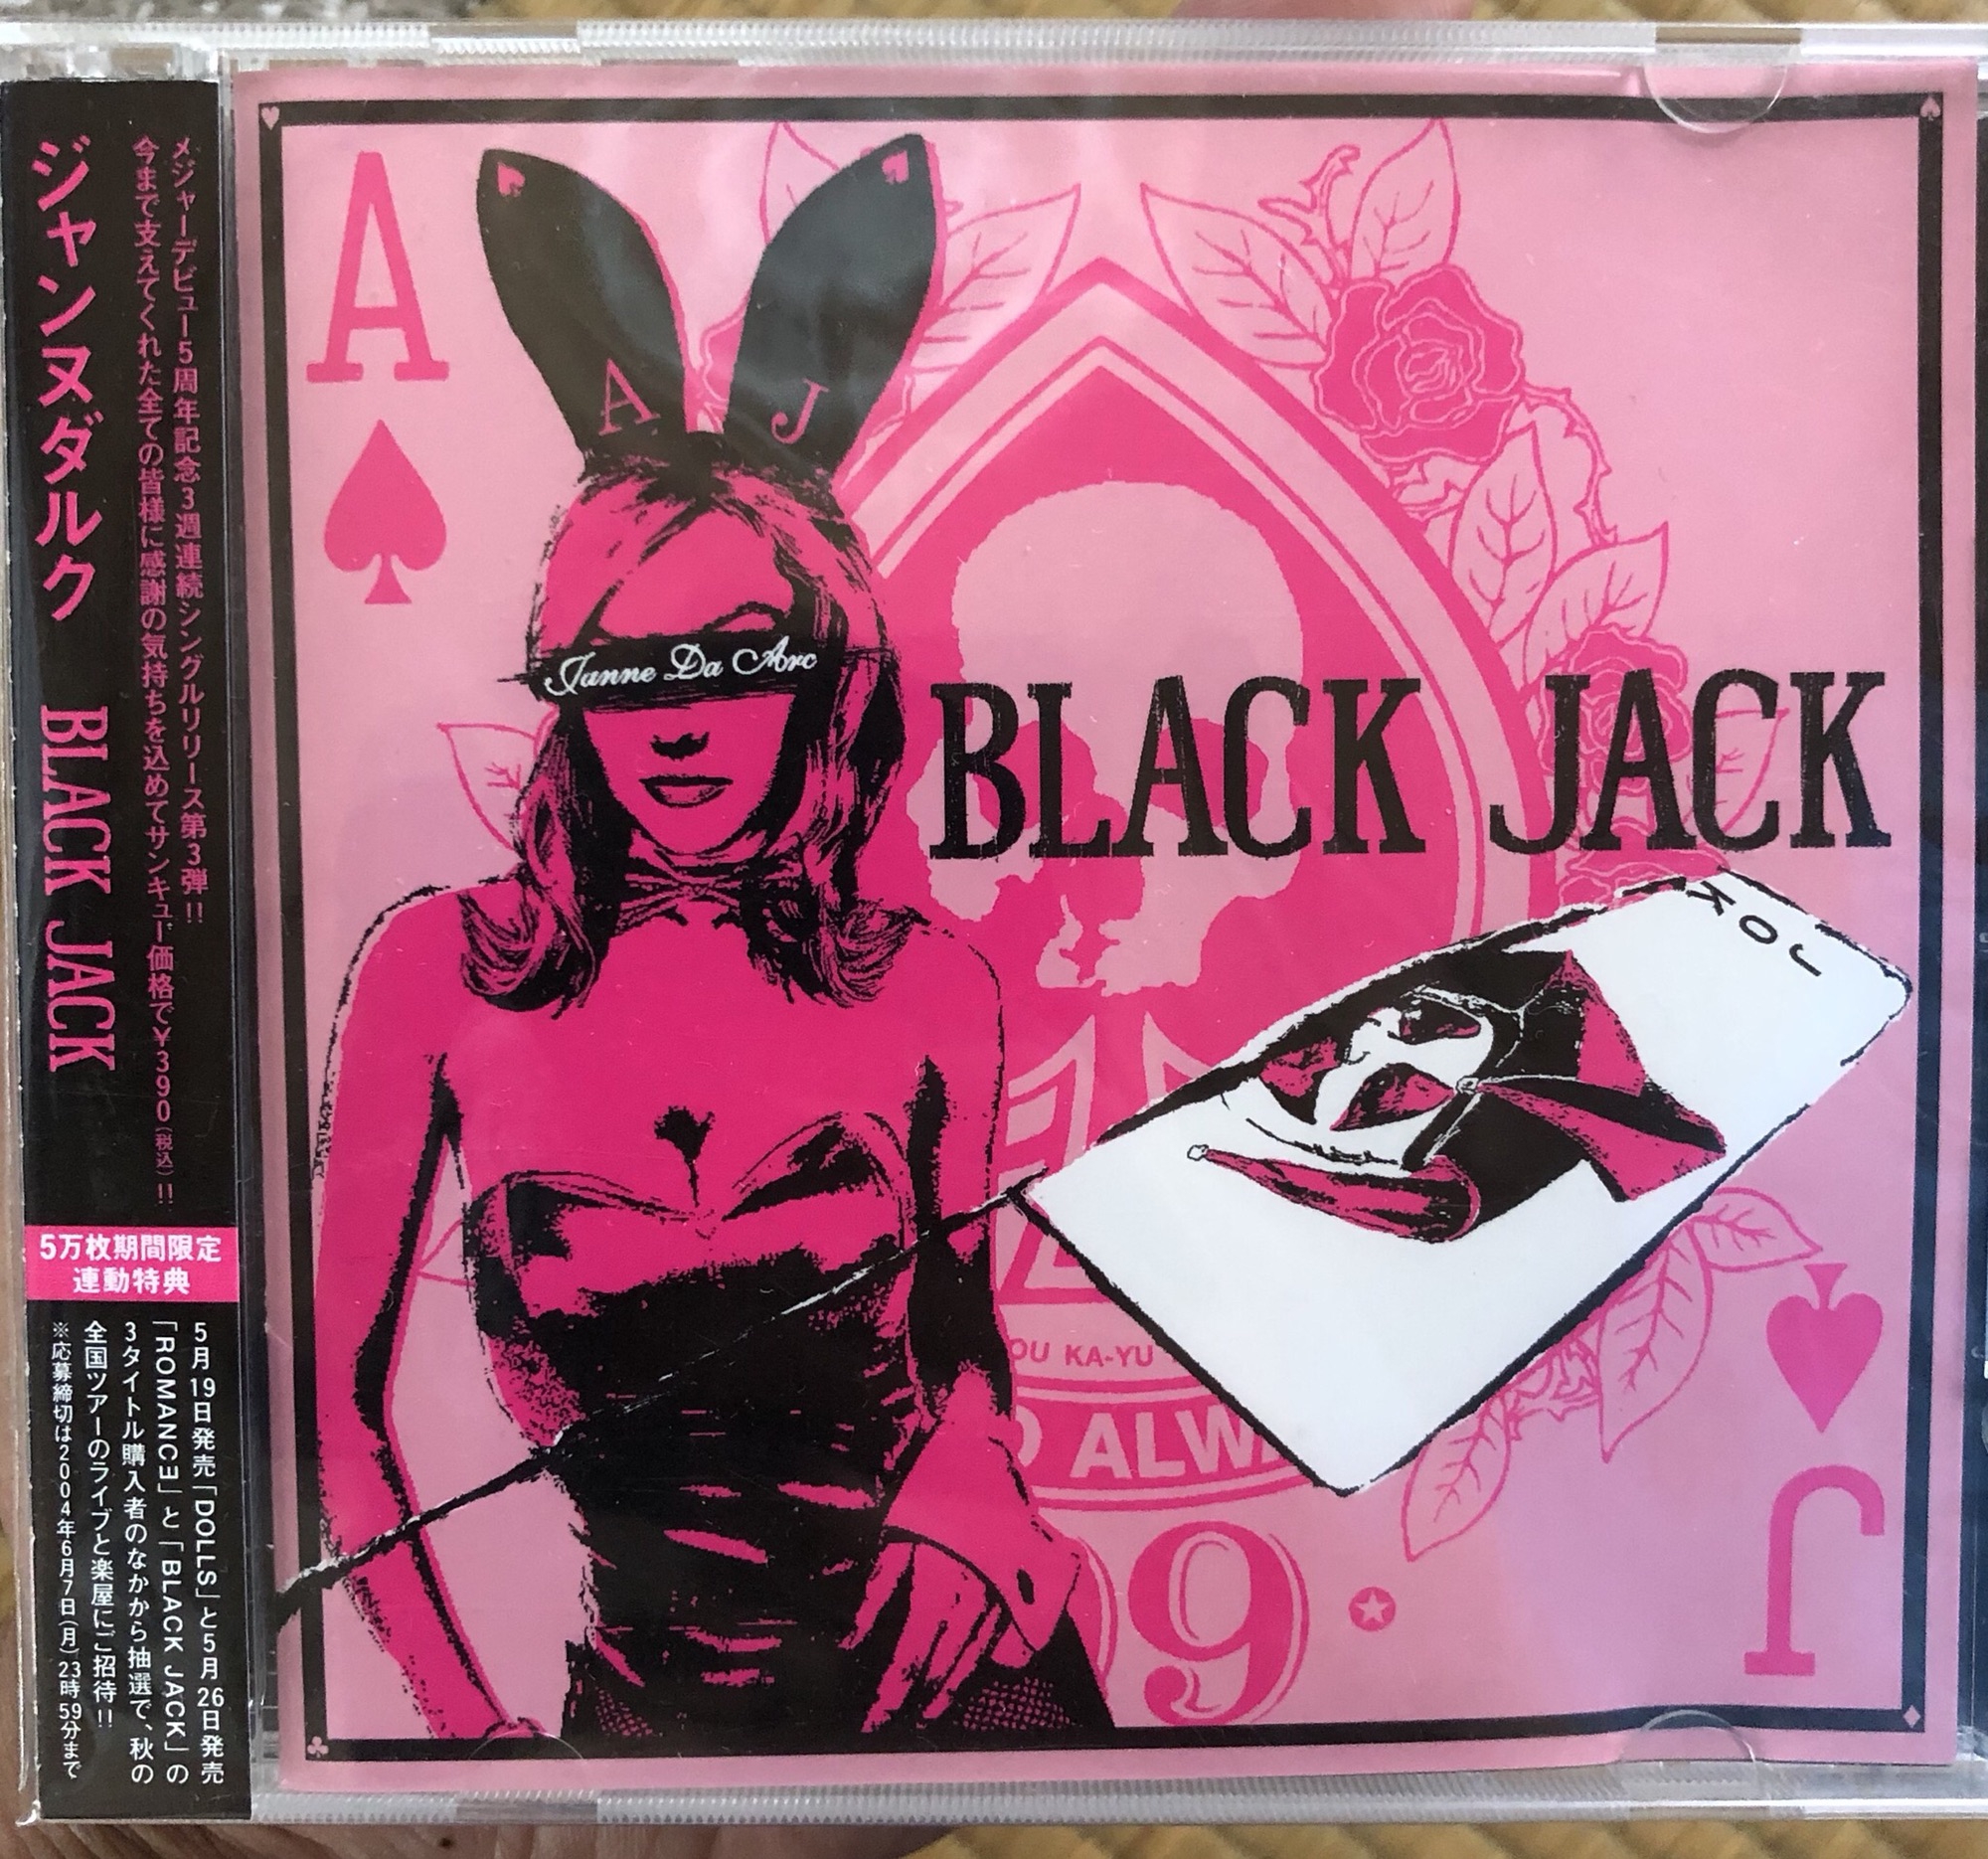 21st single〝Black Jack〟 | Janne Da Arc discography 〝LEGEND OF 